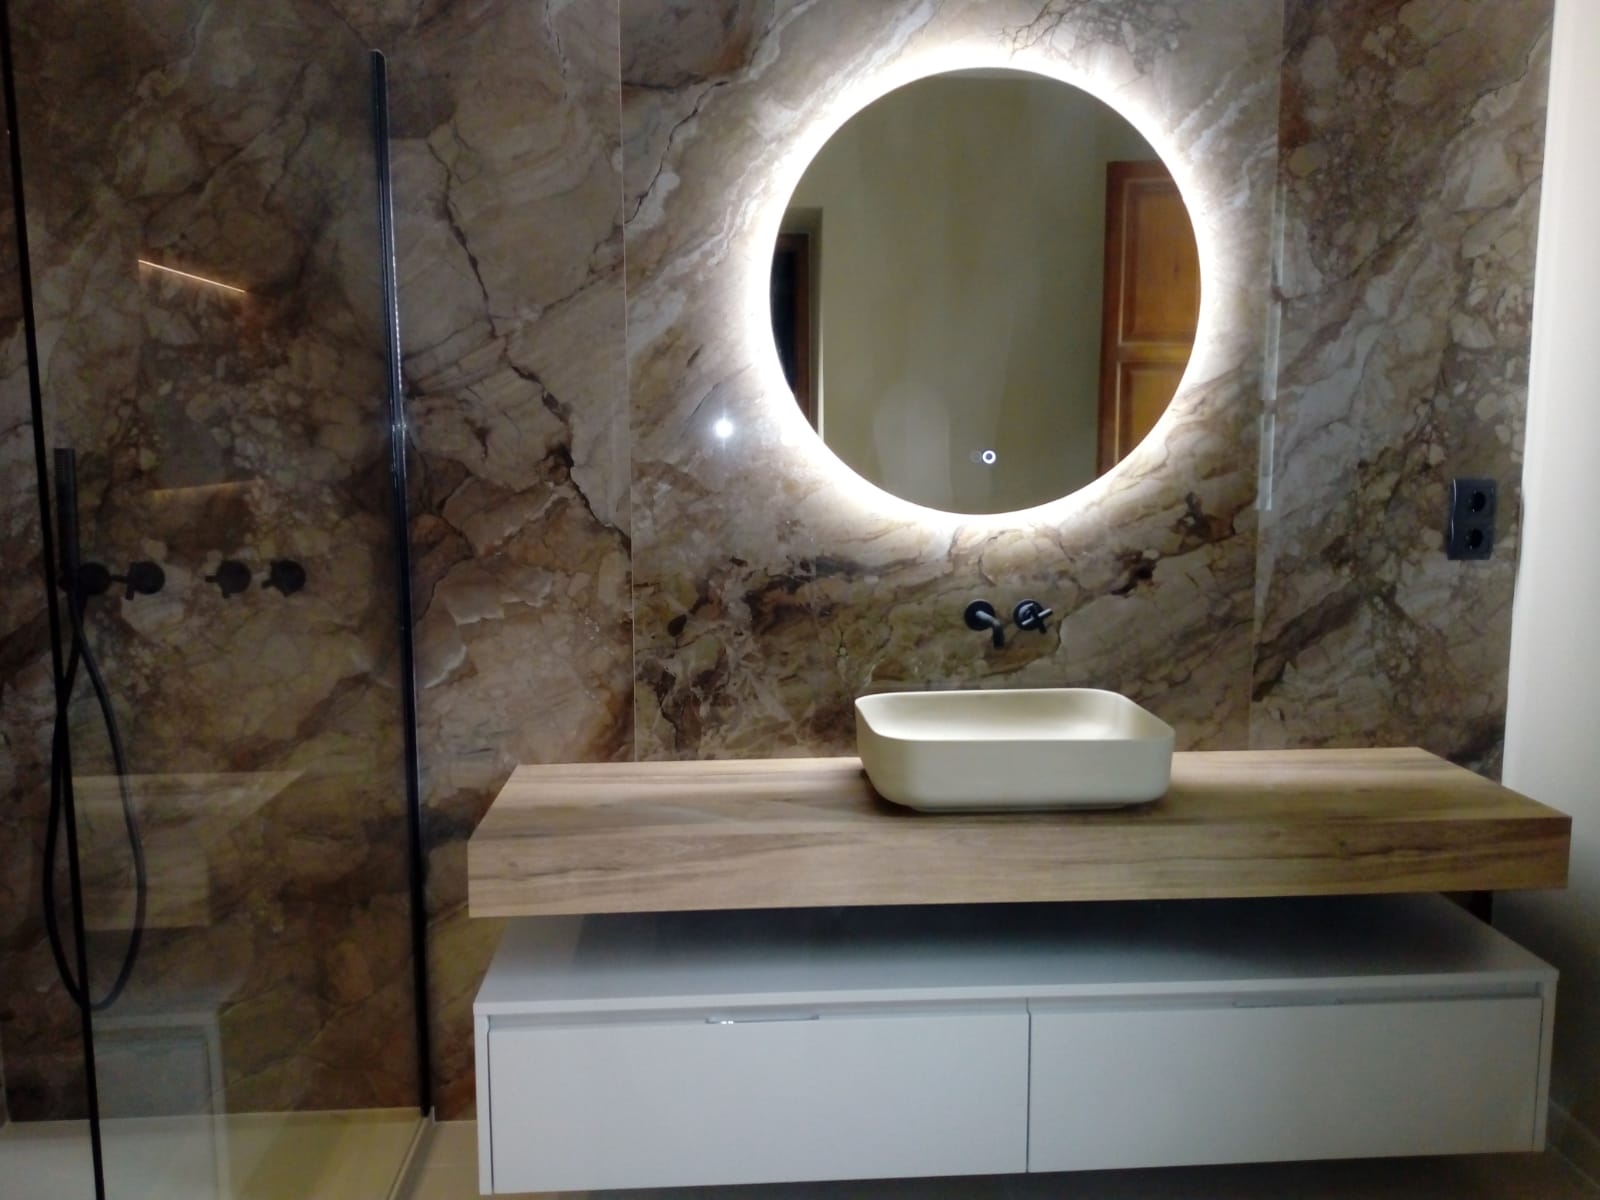 Baño reformado con espejo con luz y mueble moderno